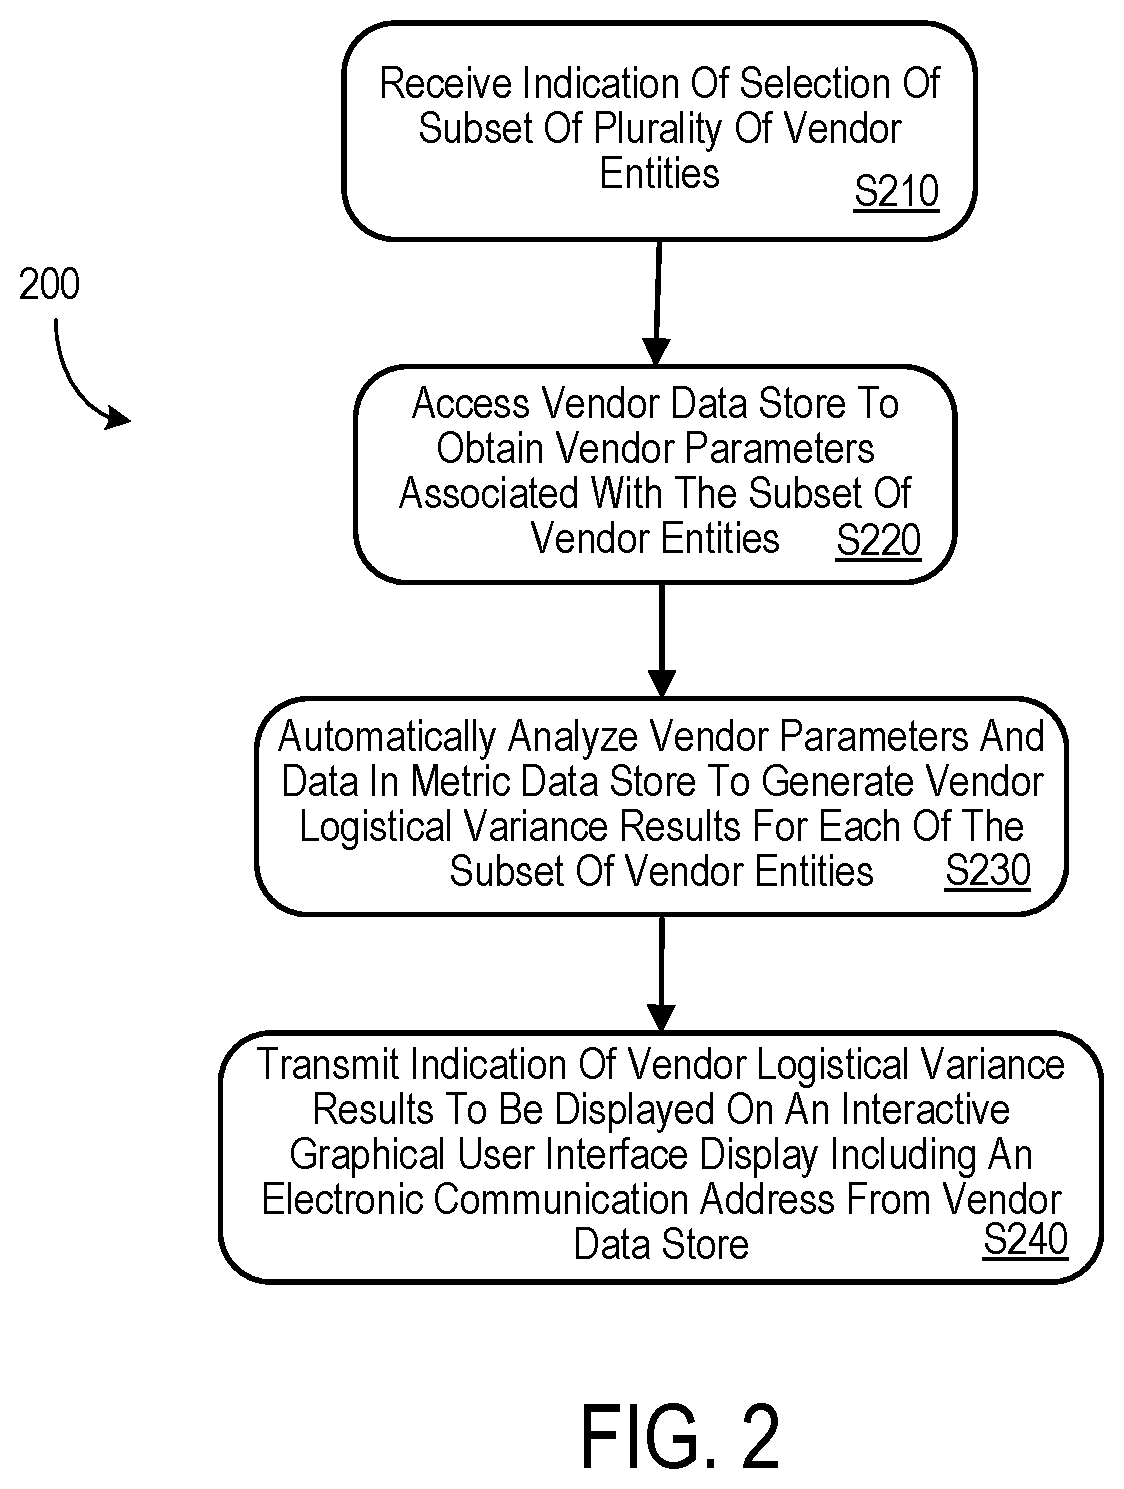 Enterprise system and method for vendor logistical variance management